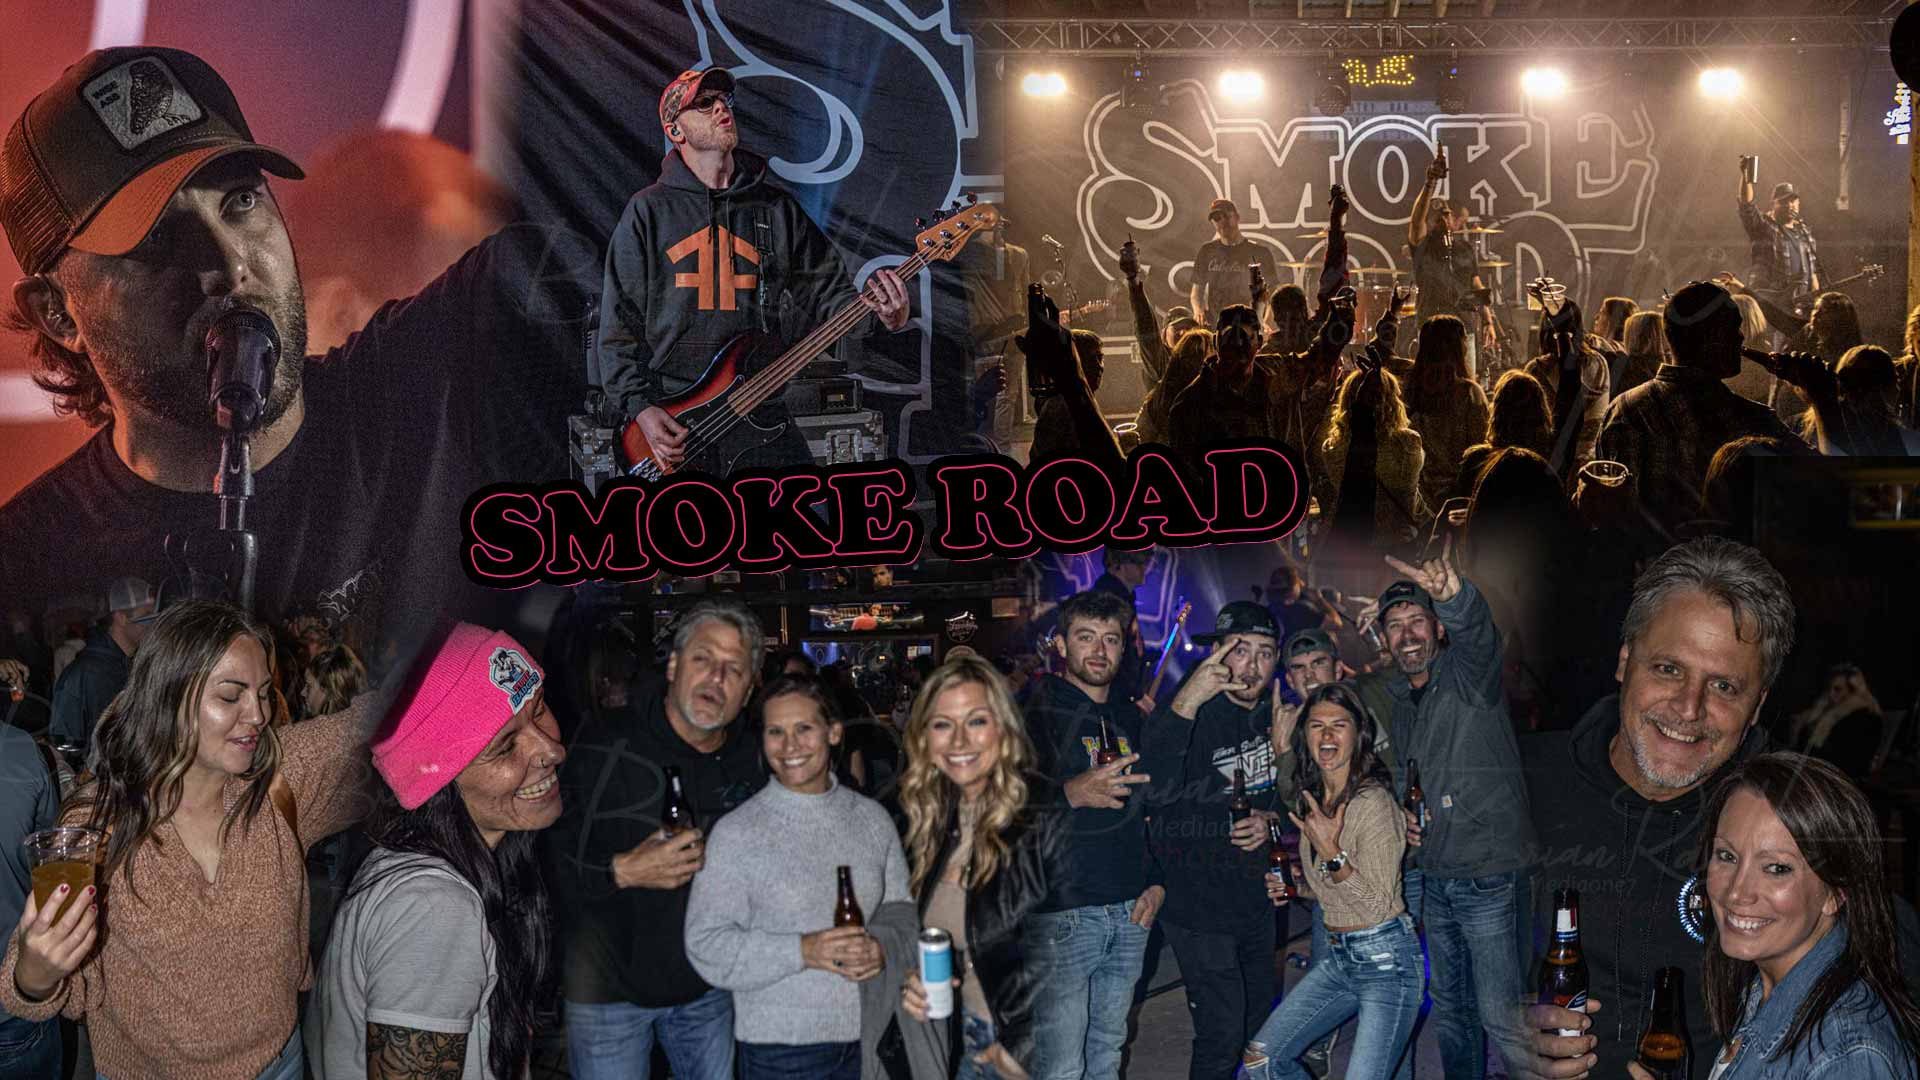 Smoke Road Band at Kountry Bar in Appleton Wisconsin